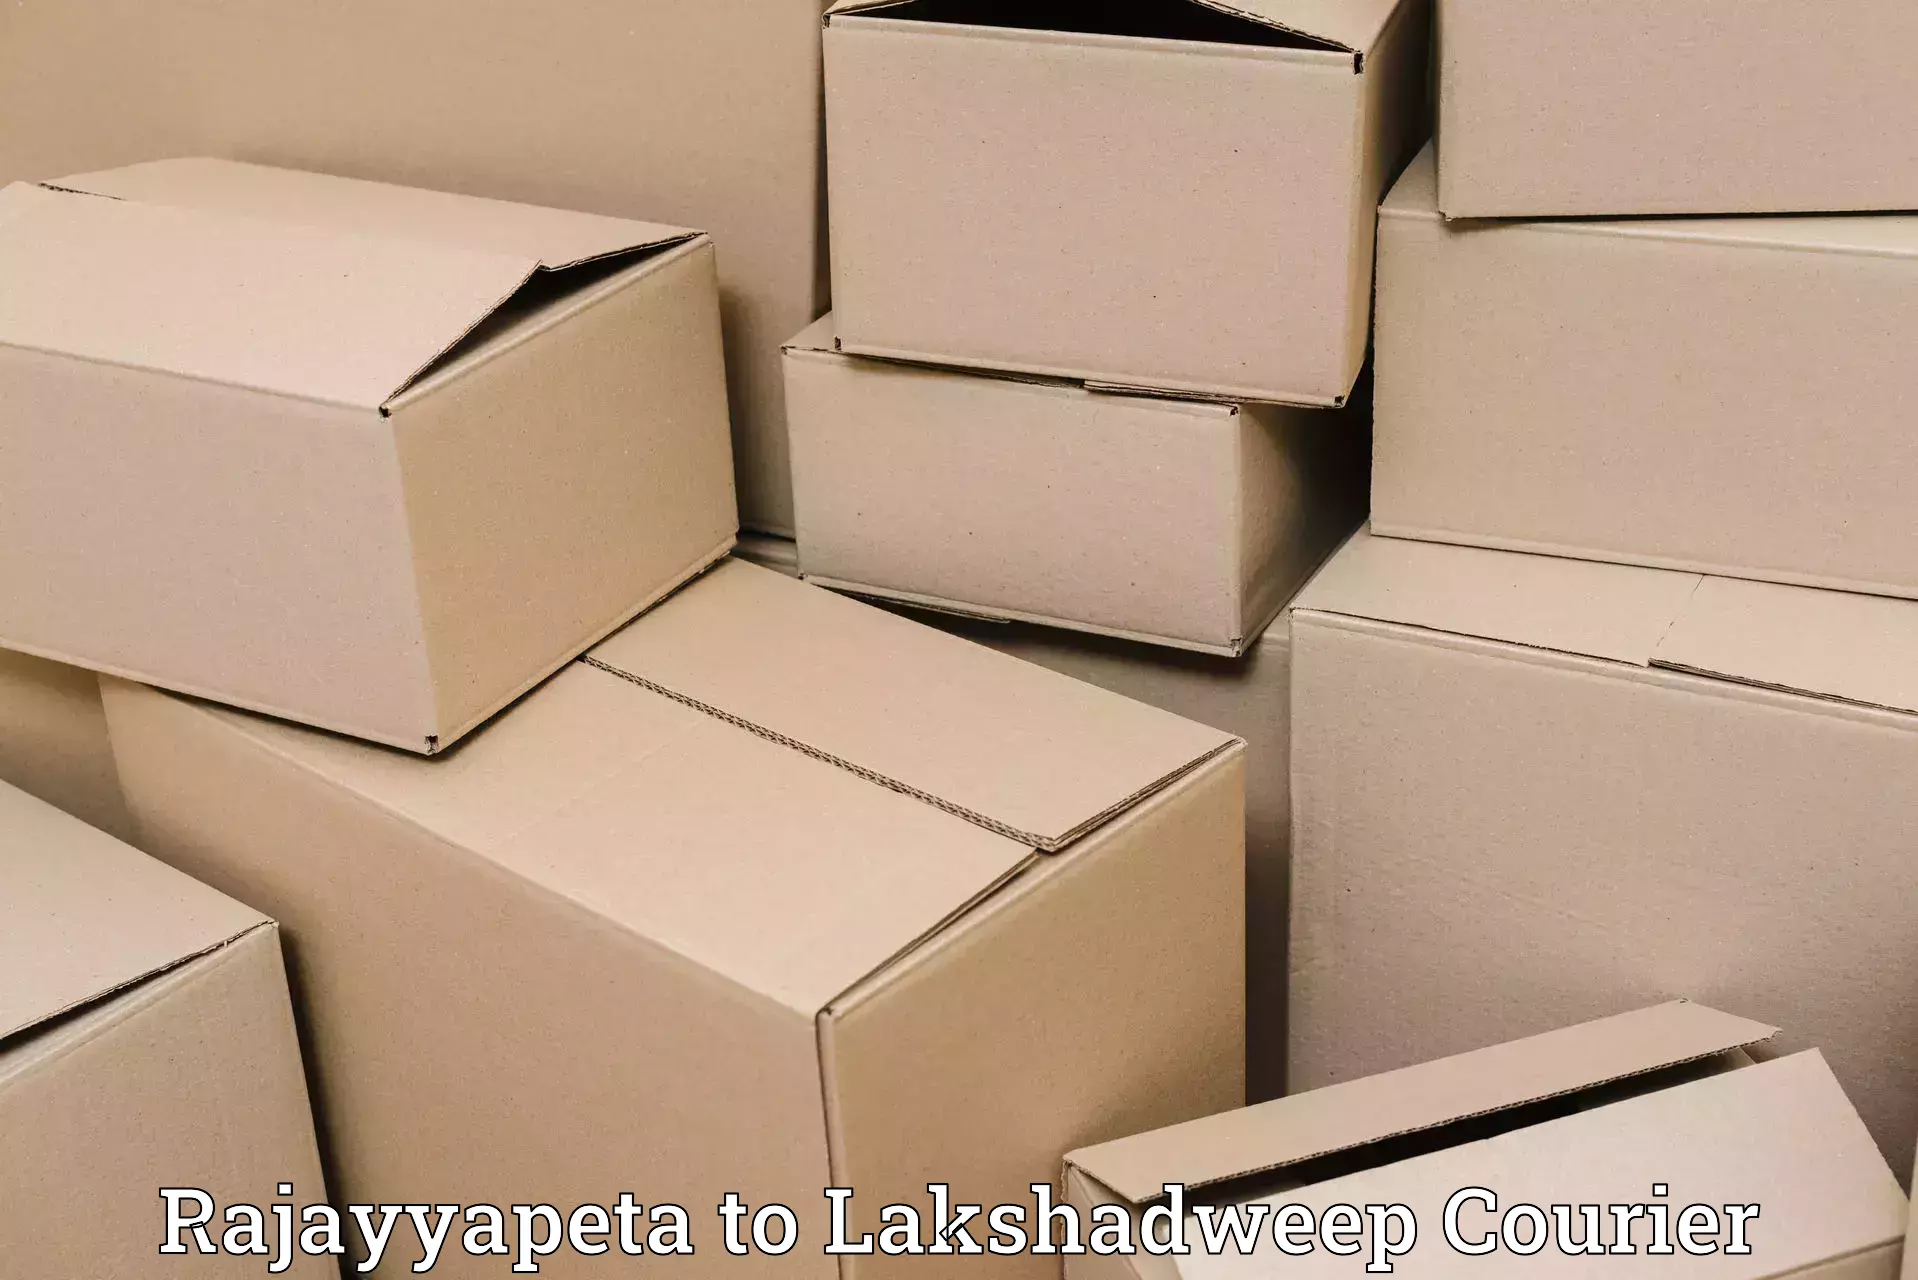 Baggage transport management in Rajayyapeta to Lakshadweep